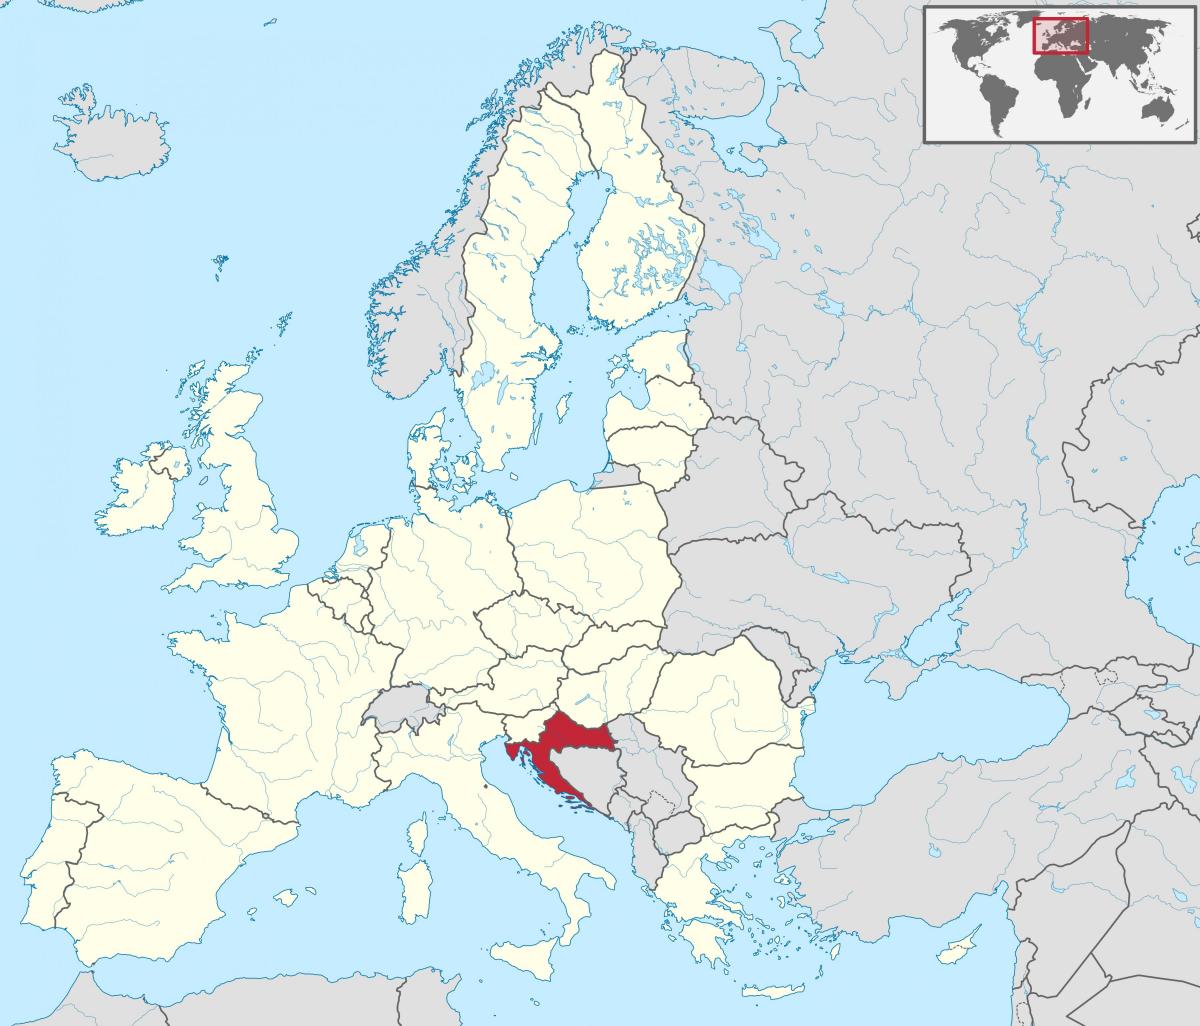 Ubicación de Croacia en el mapa de Europa meridional